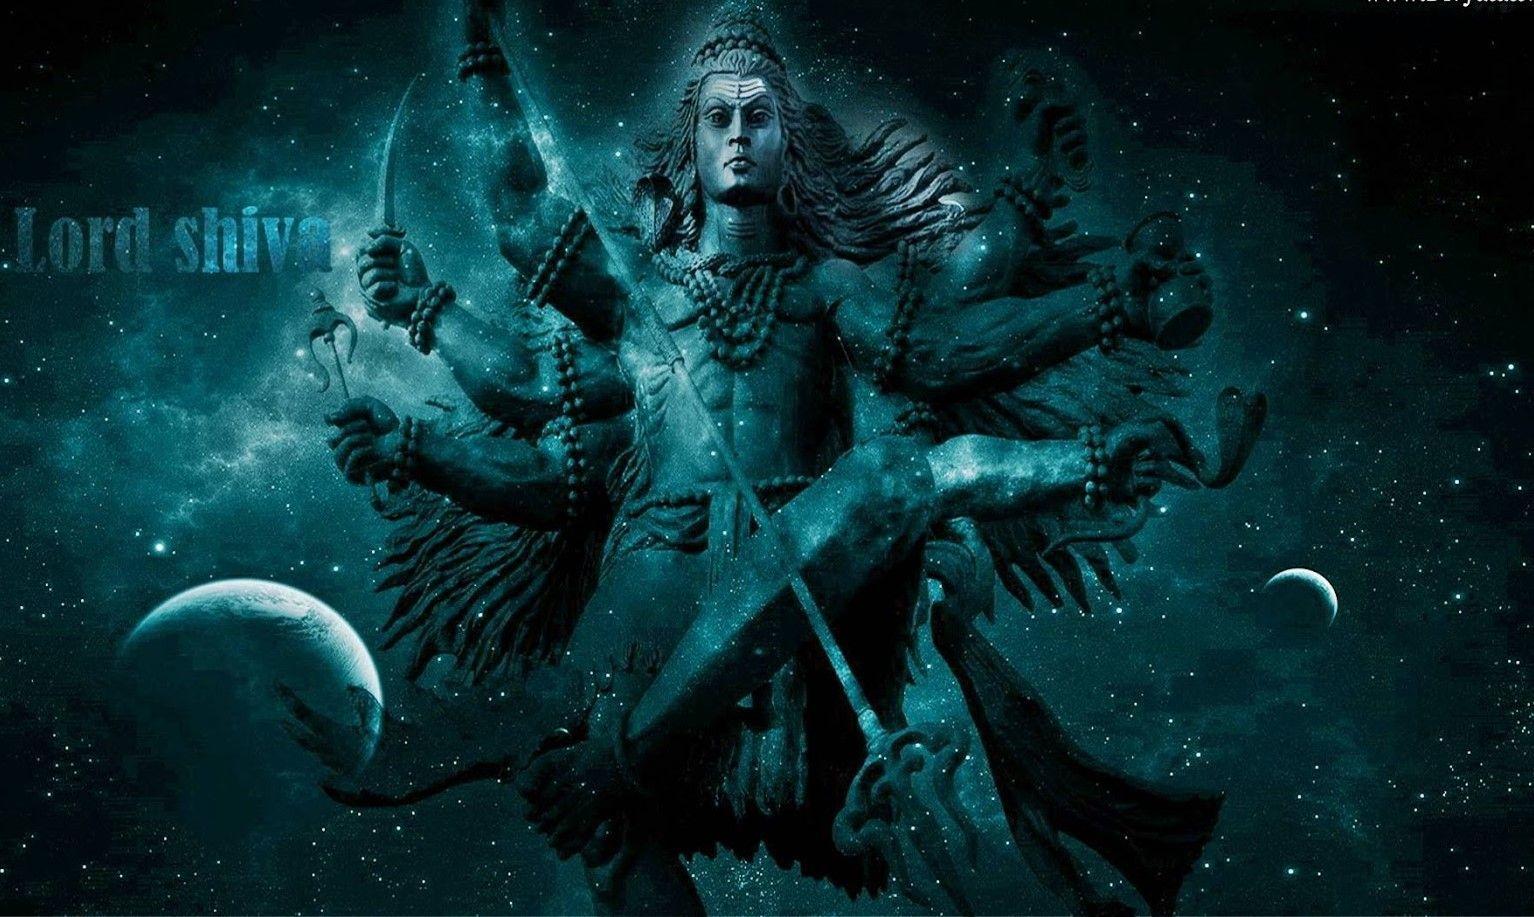 1534x917 Chúa Shiva là cha đẻ của Yoga, Thiền, Tâm linh